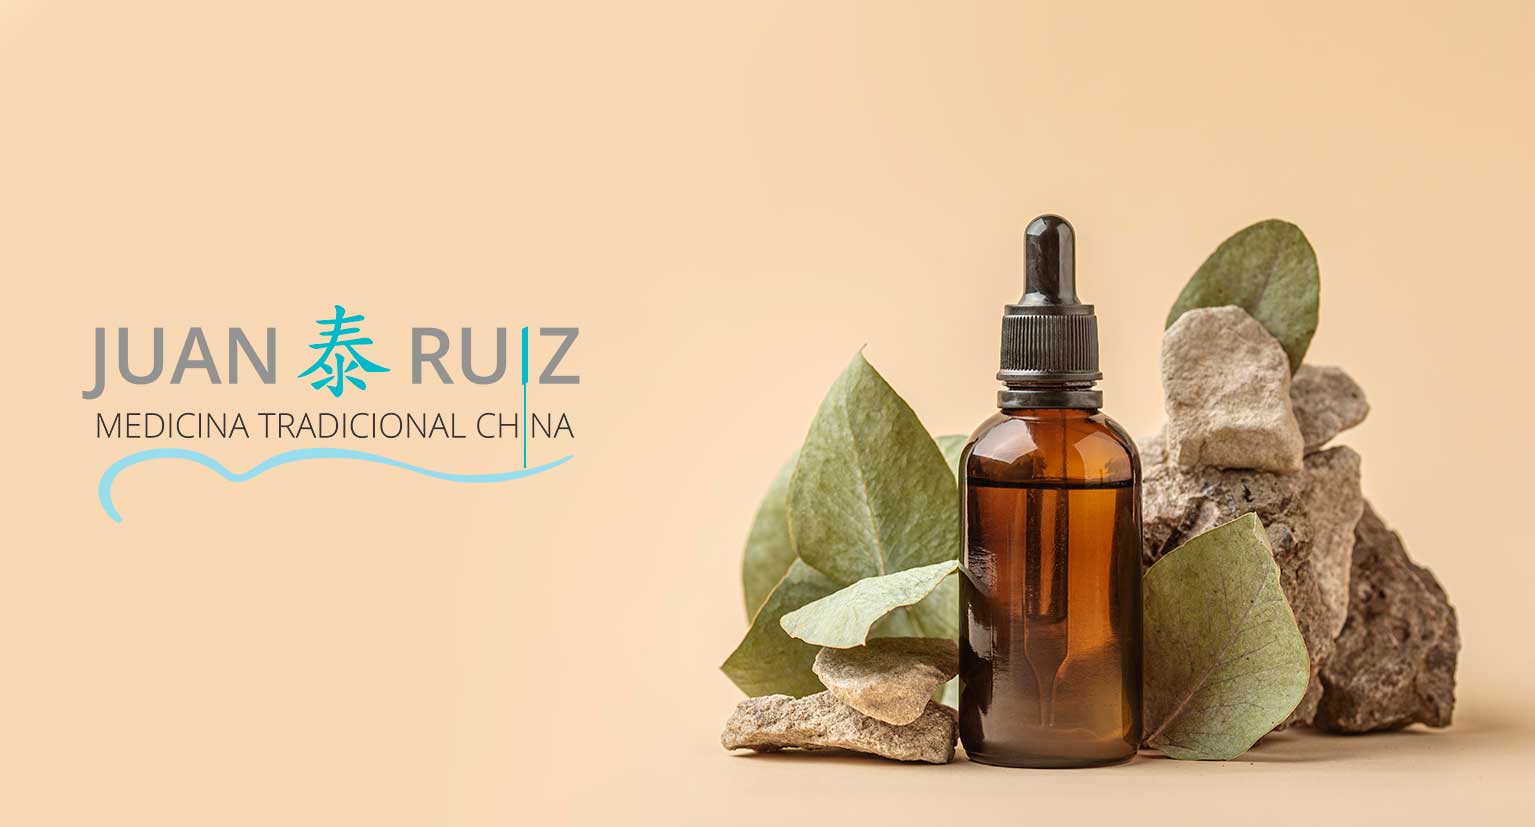 fitoterapia es una de las terapias de la medicina tradicional china en Granada